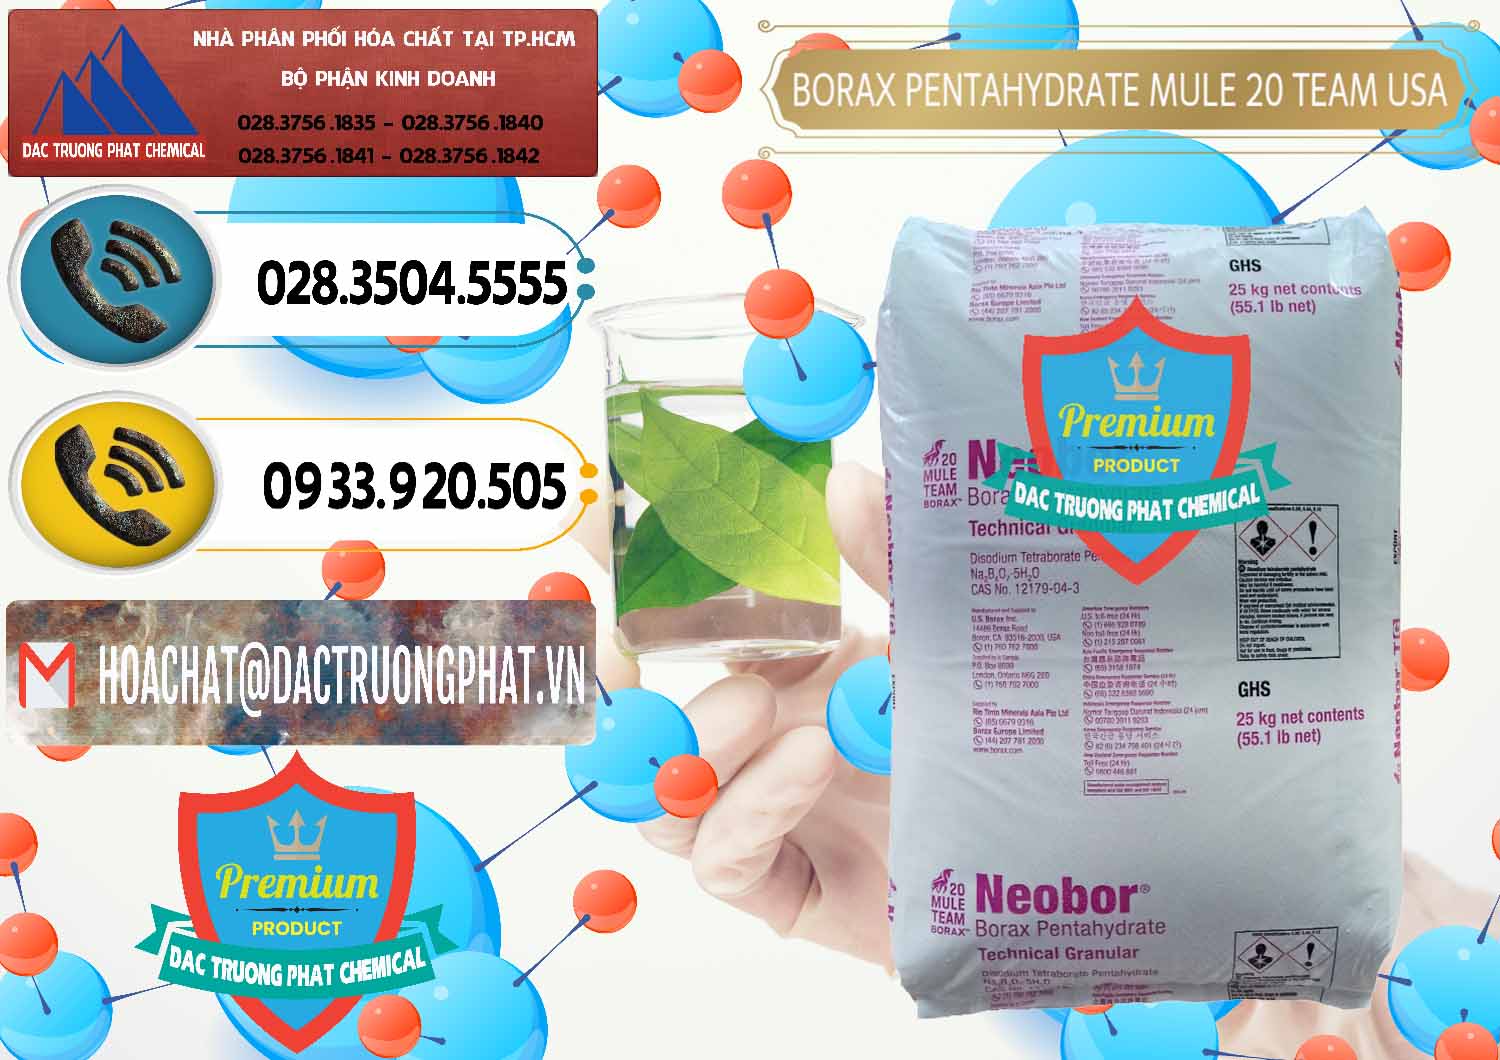 Nơi bán ( cung cấp ) Borax Pentahydrate - NA2B4O7.5H2O Mỹ USA - Mule 20 Team - 0034 - Chuyên cung ứng và phân phối hóa chất tại TP.HCM - hoachatdetnhuom.vn